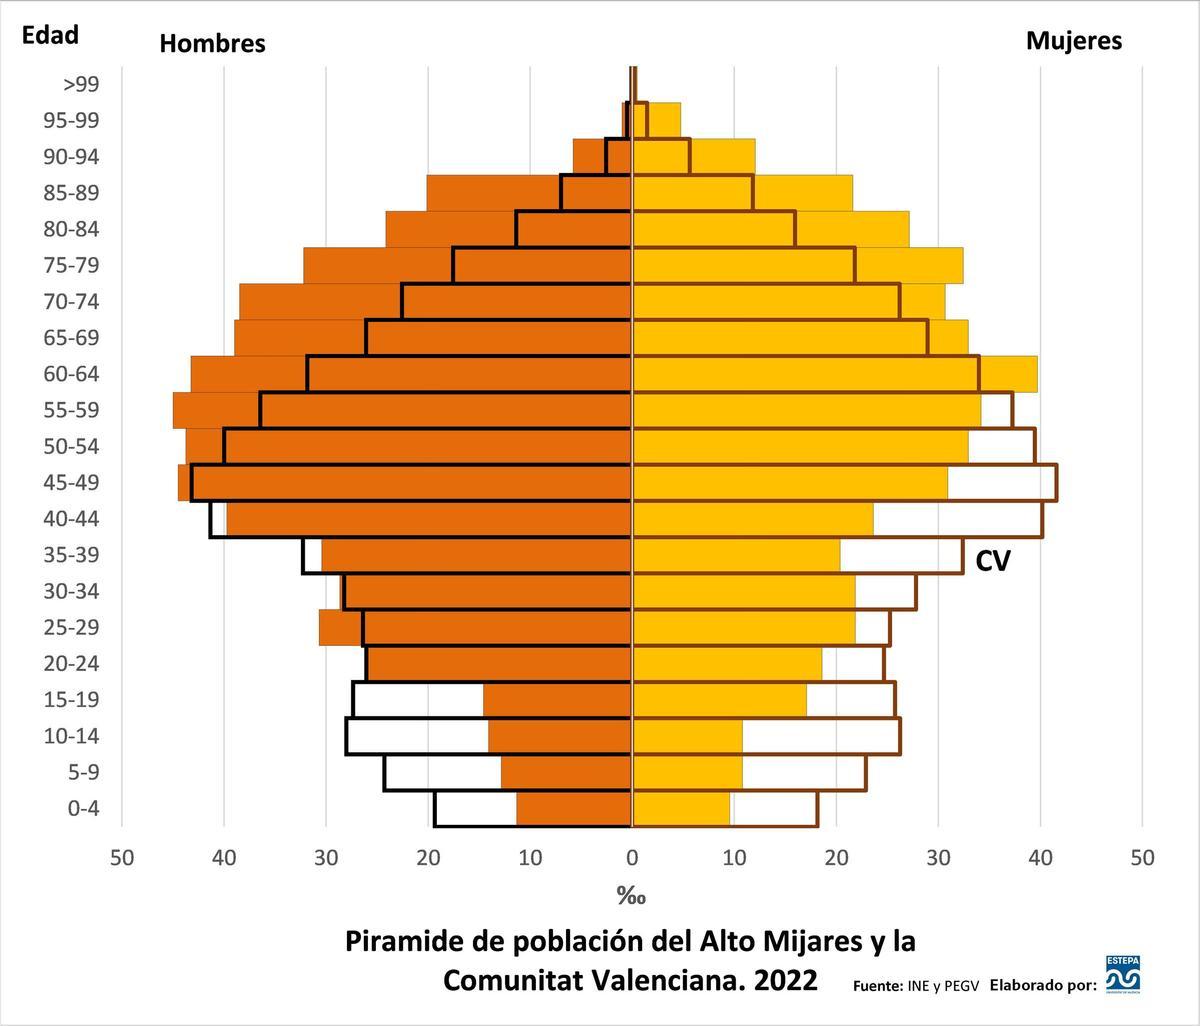 Pirámide de población del Alto Mijares y la Comunitat Valenciana. Año 2022.